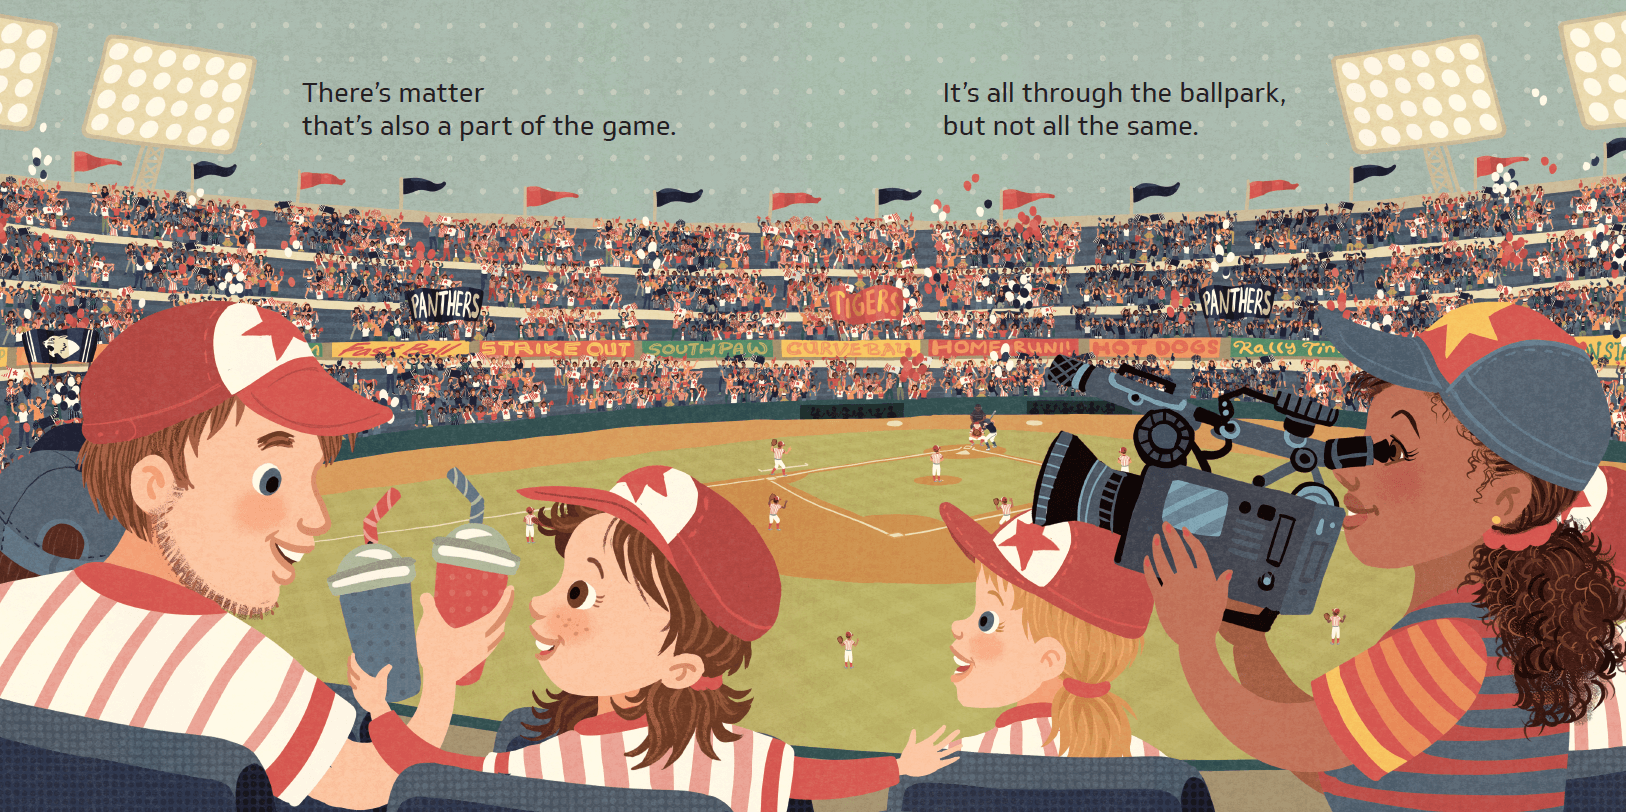 Science, Matter & The Baseball Park